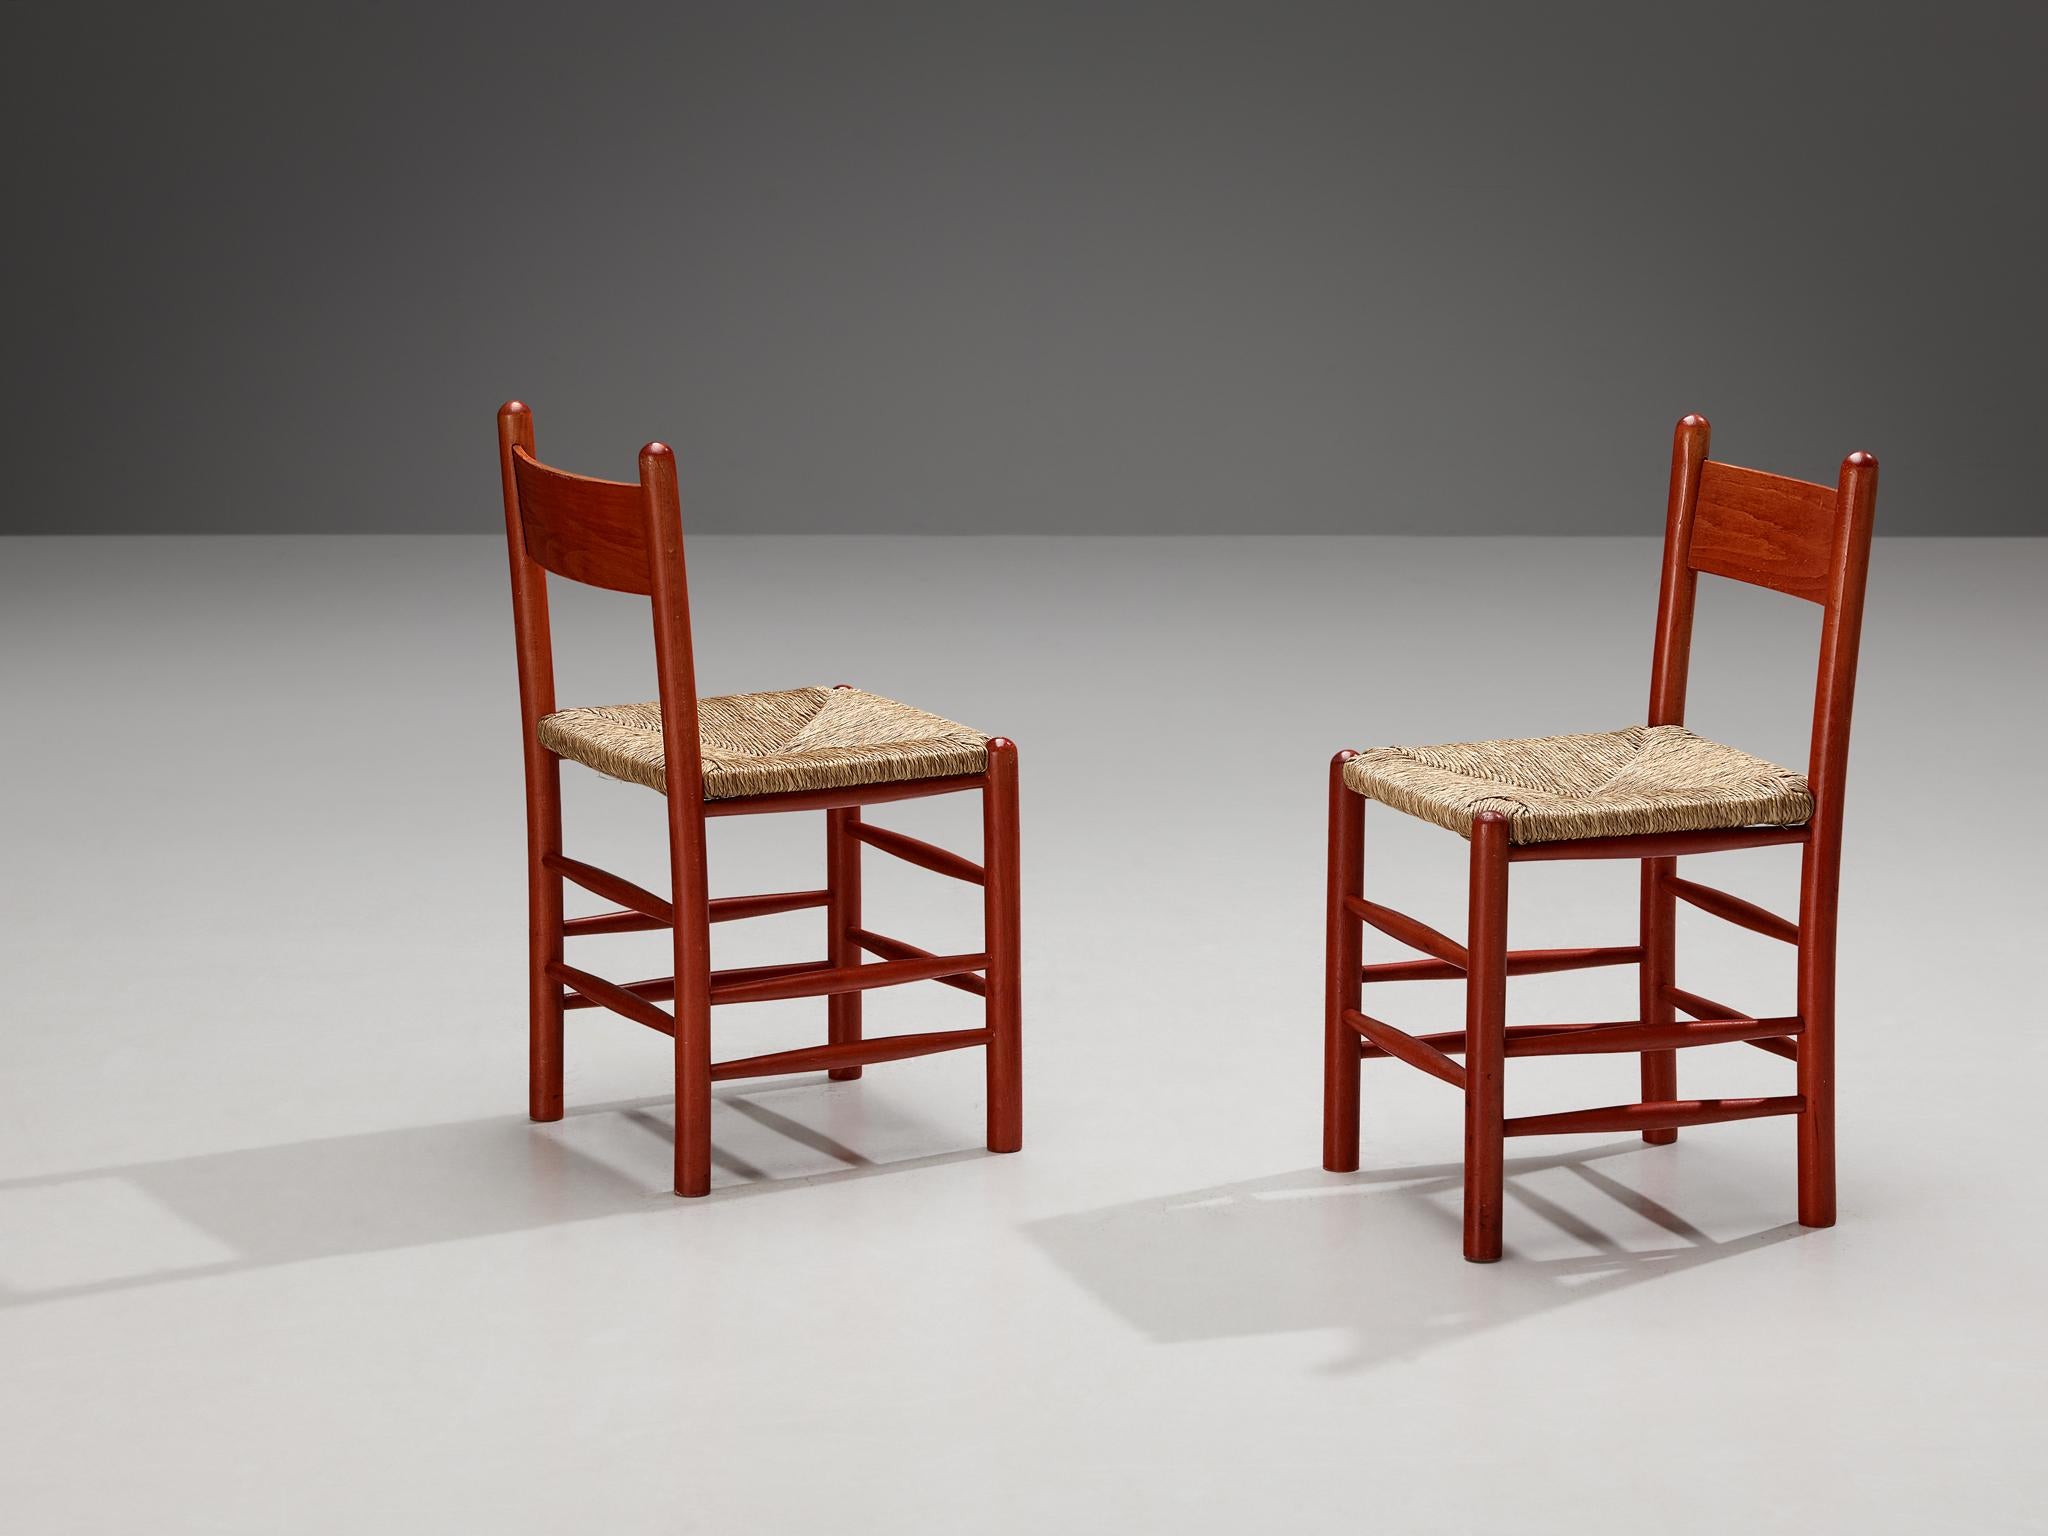 Paire de chaises de salle à manger, hêtre, paille, France, années 1960.

Superbe ensemble de chaises françaises avec des cadres en hêtre rouge et des sièges classiques en paille organique. Cet ensemble de chaises de salle à manger est doté d'un